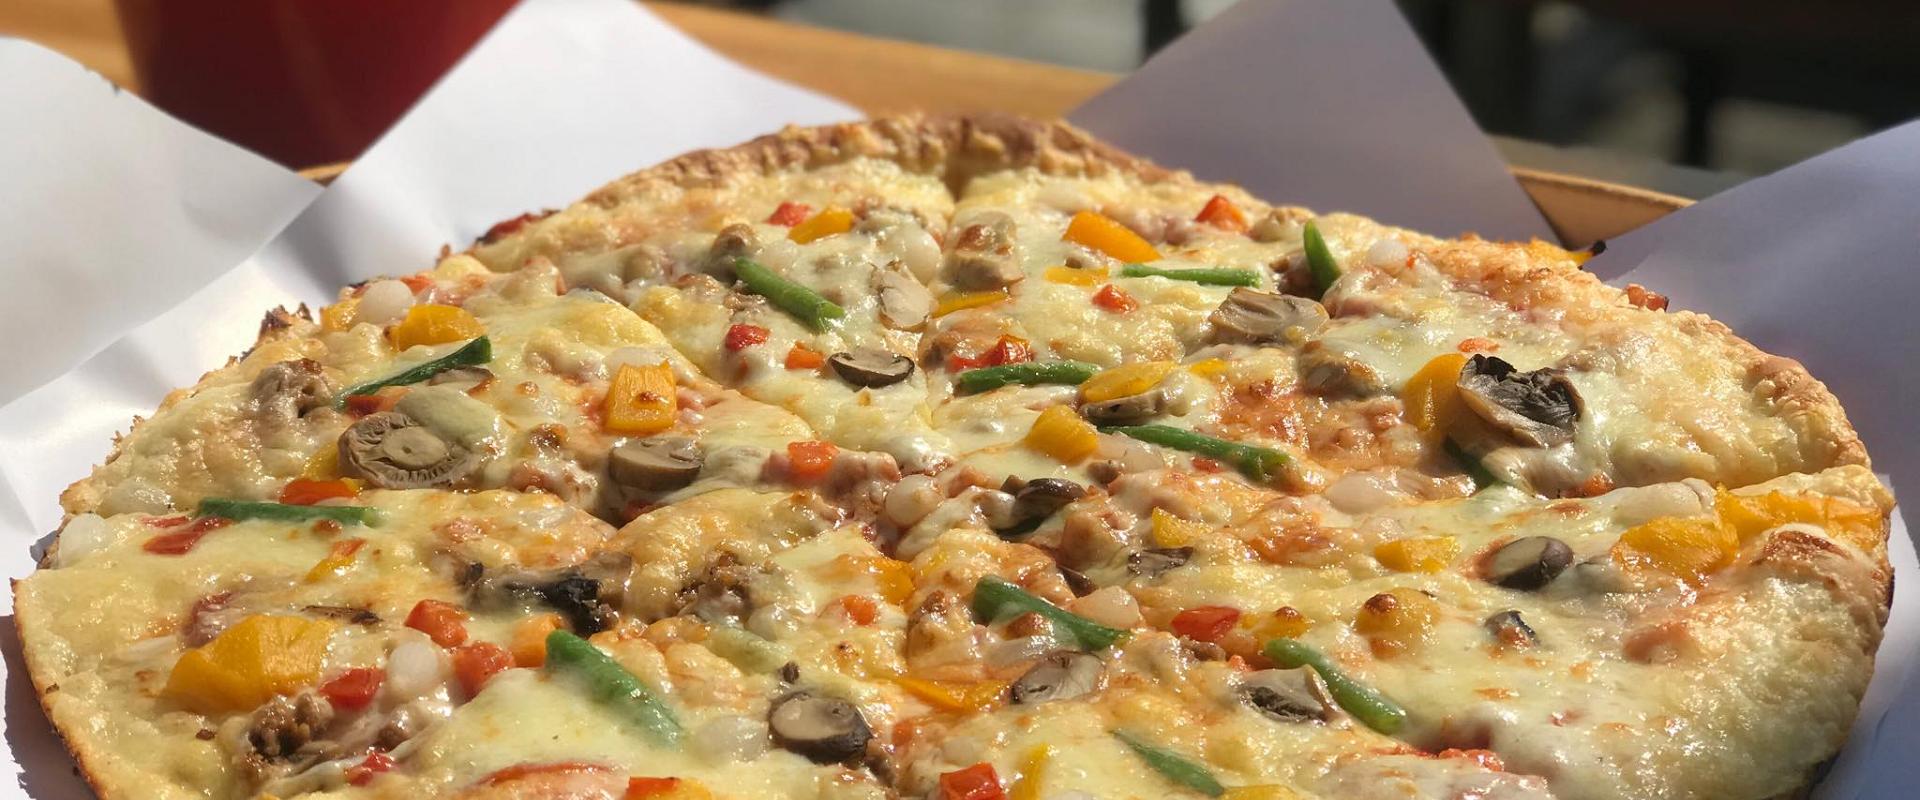 Pizza Grande atrodas Hāpsalu vecpilsētā uz Karja ielas. Papildus plašam picu sortimentam picērija piedāvā arī pastas un salātus. Grande pizza ir slave